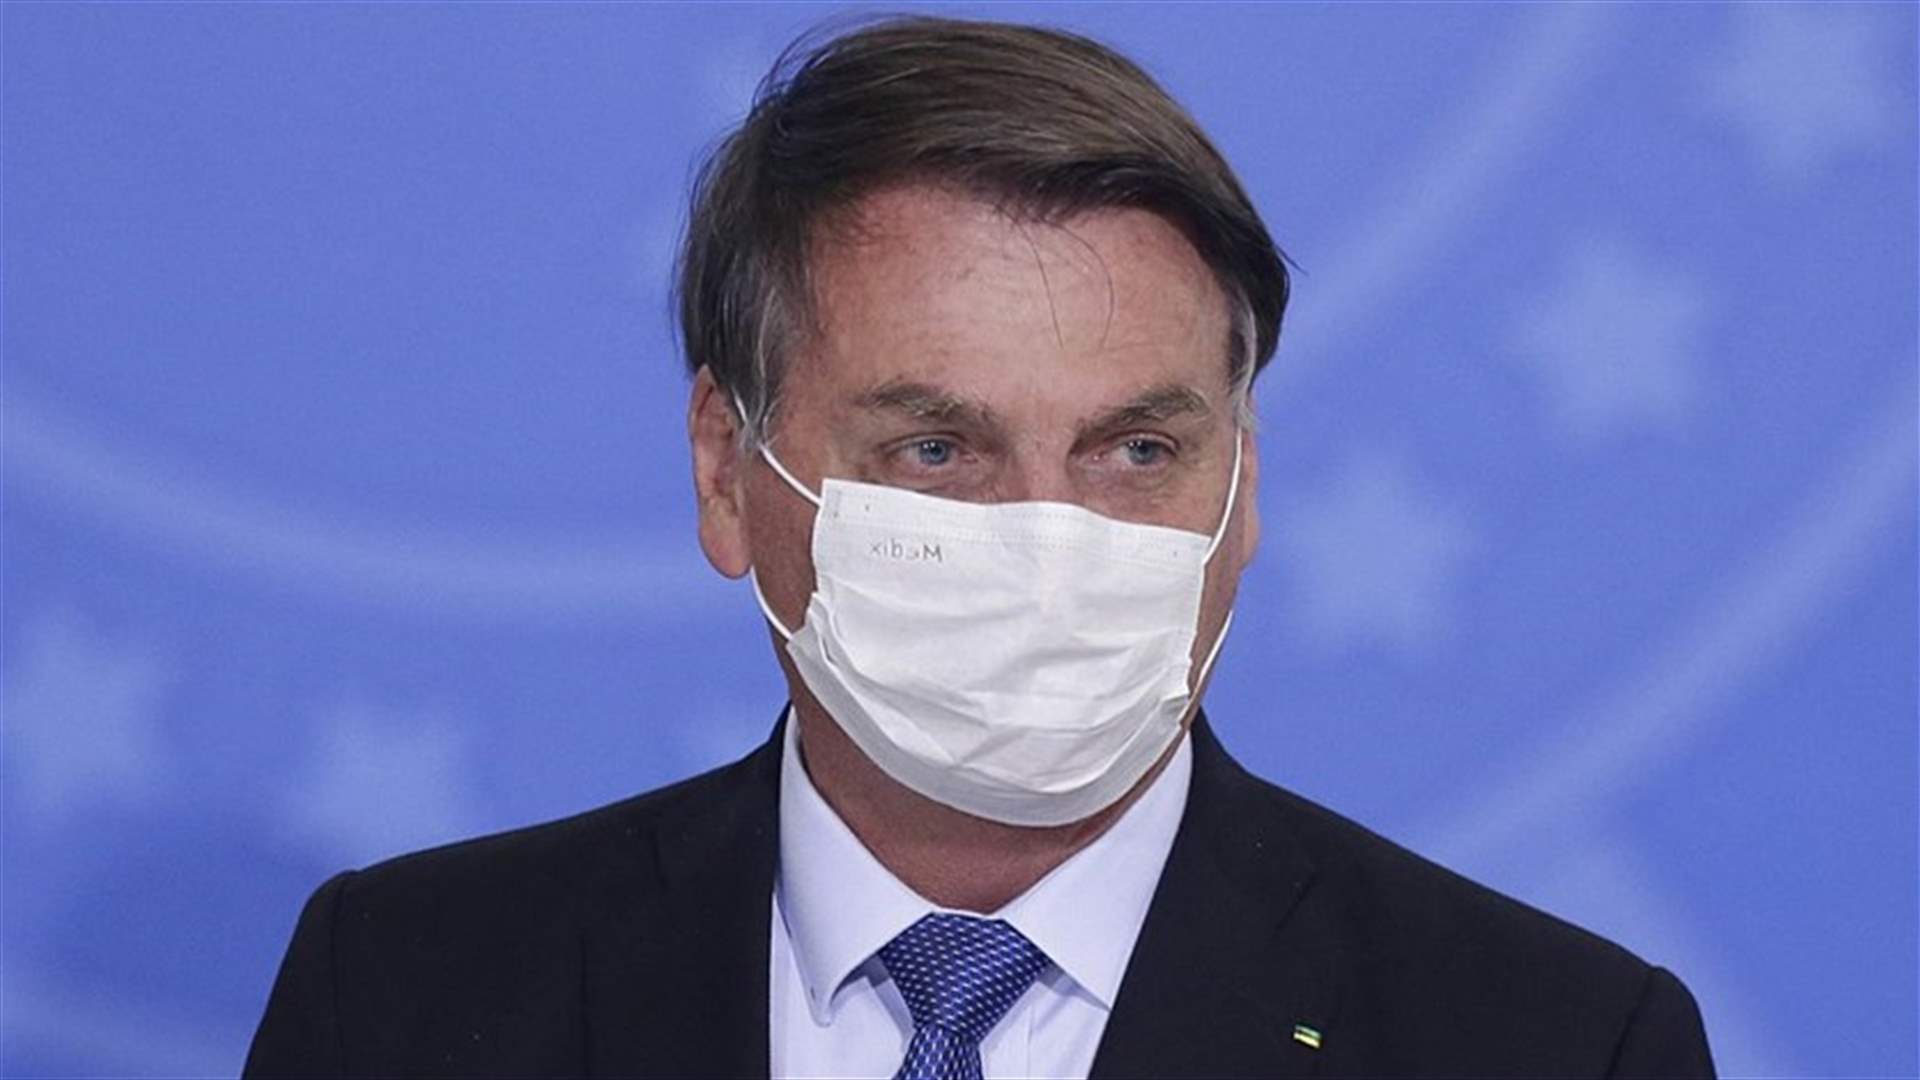 الرئيس البرازيلي يعلن إصابته بفيروس كورونا